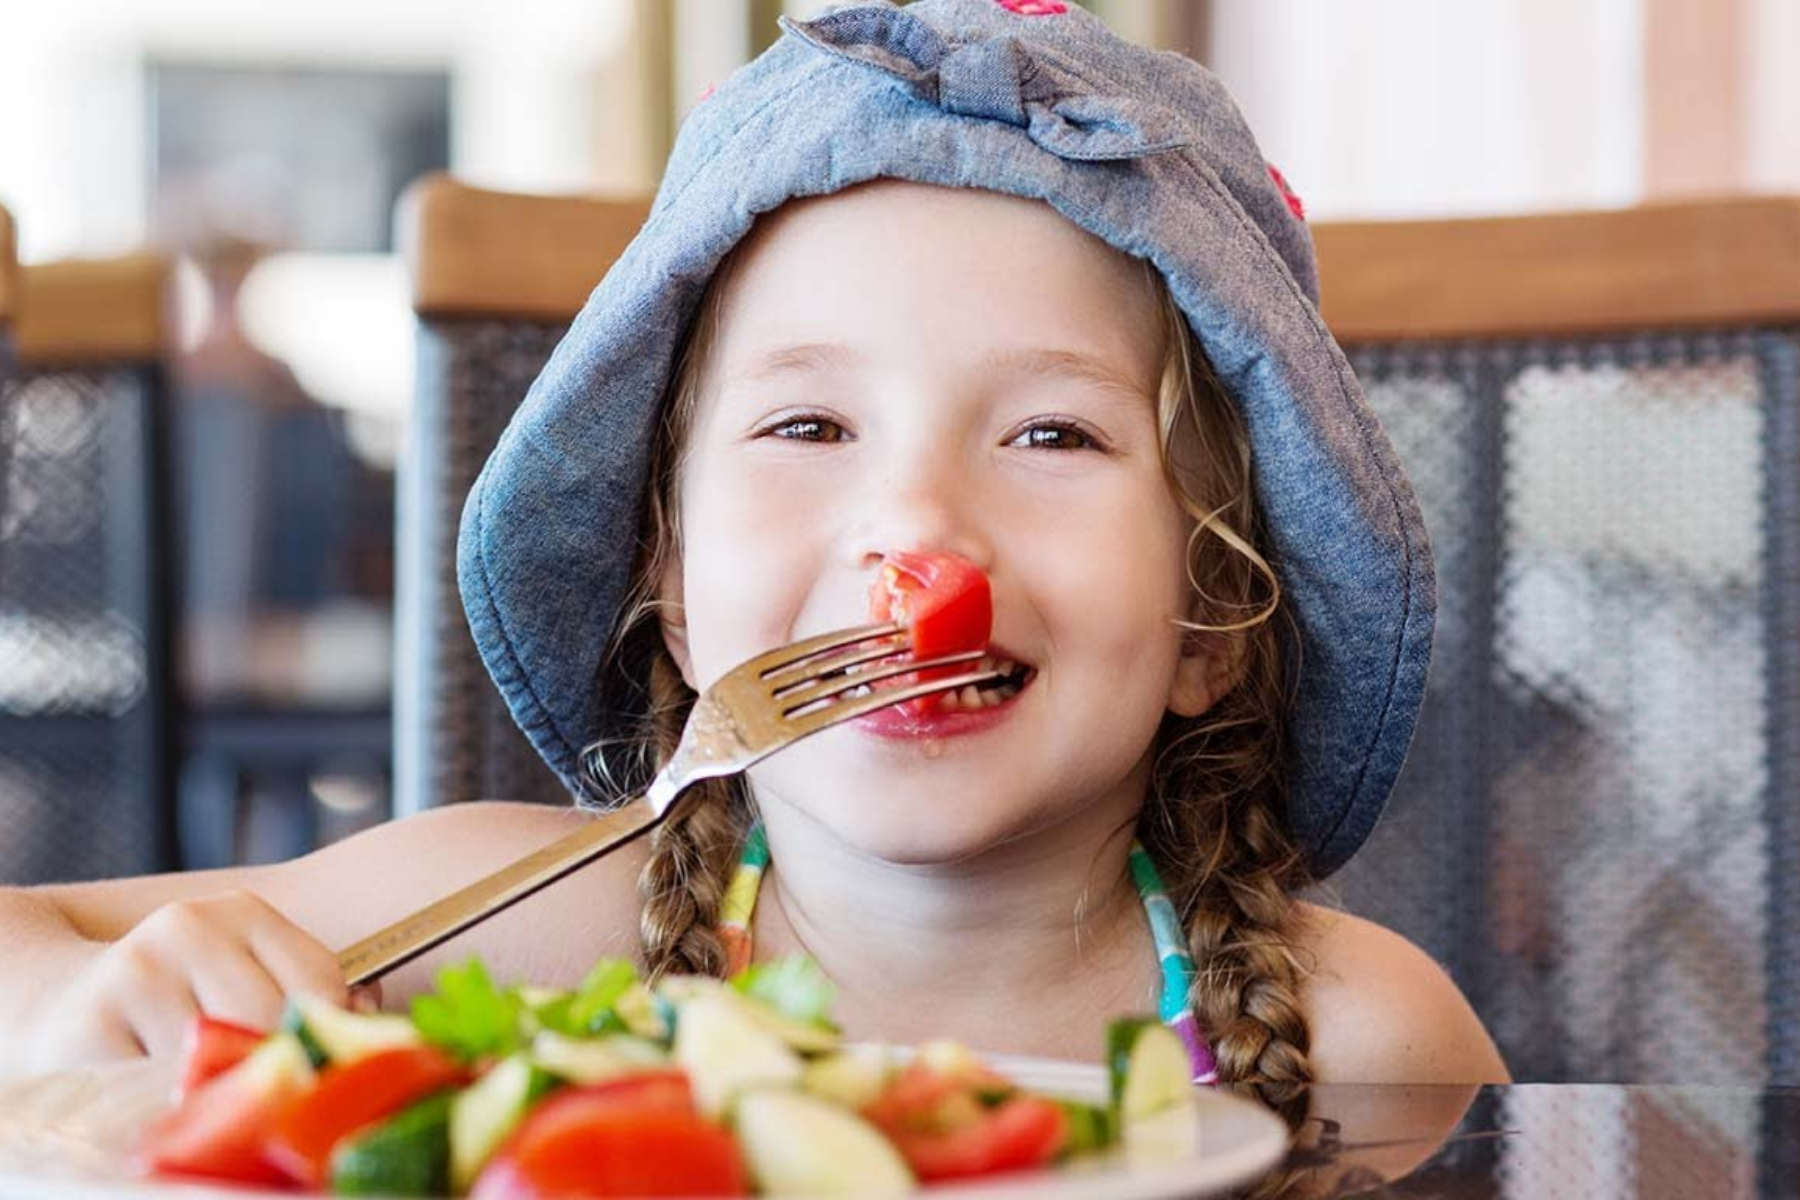 Παιδιά διατροφή: Πώς θα κάνετε τα παιδιά σας να φάνε λαχανικά και φρούτα;